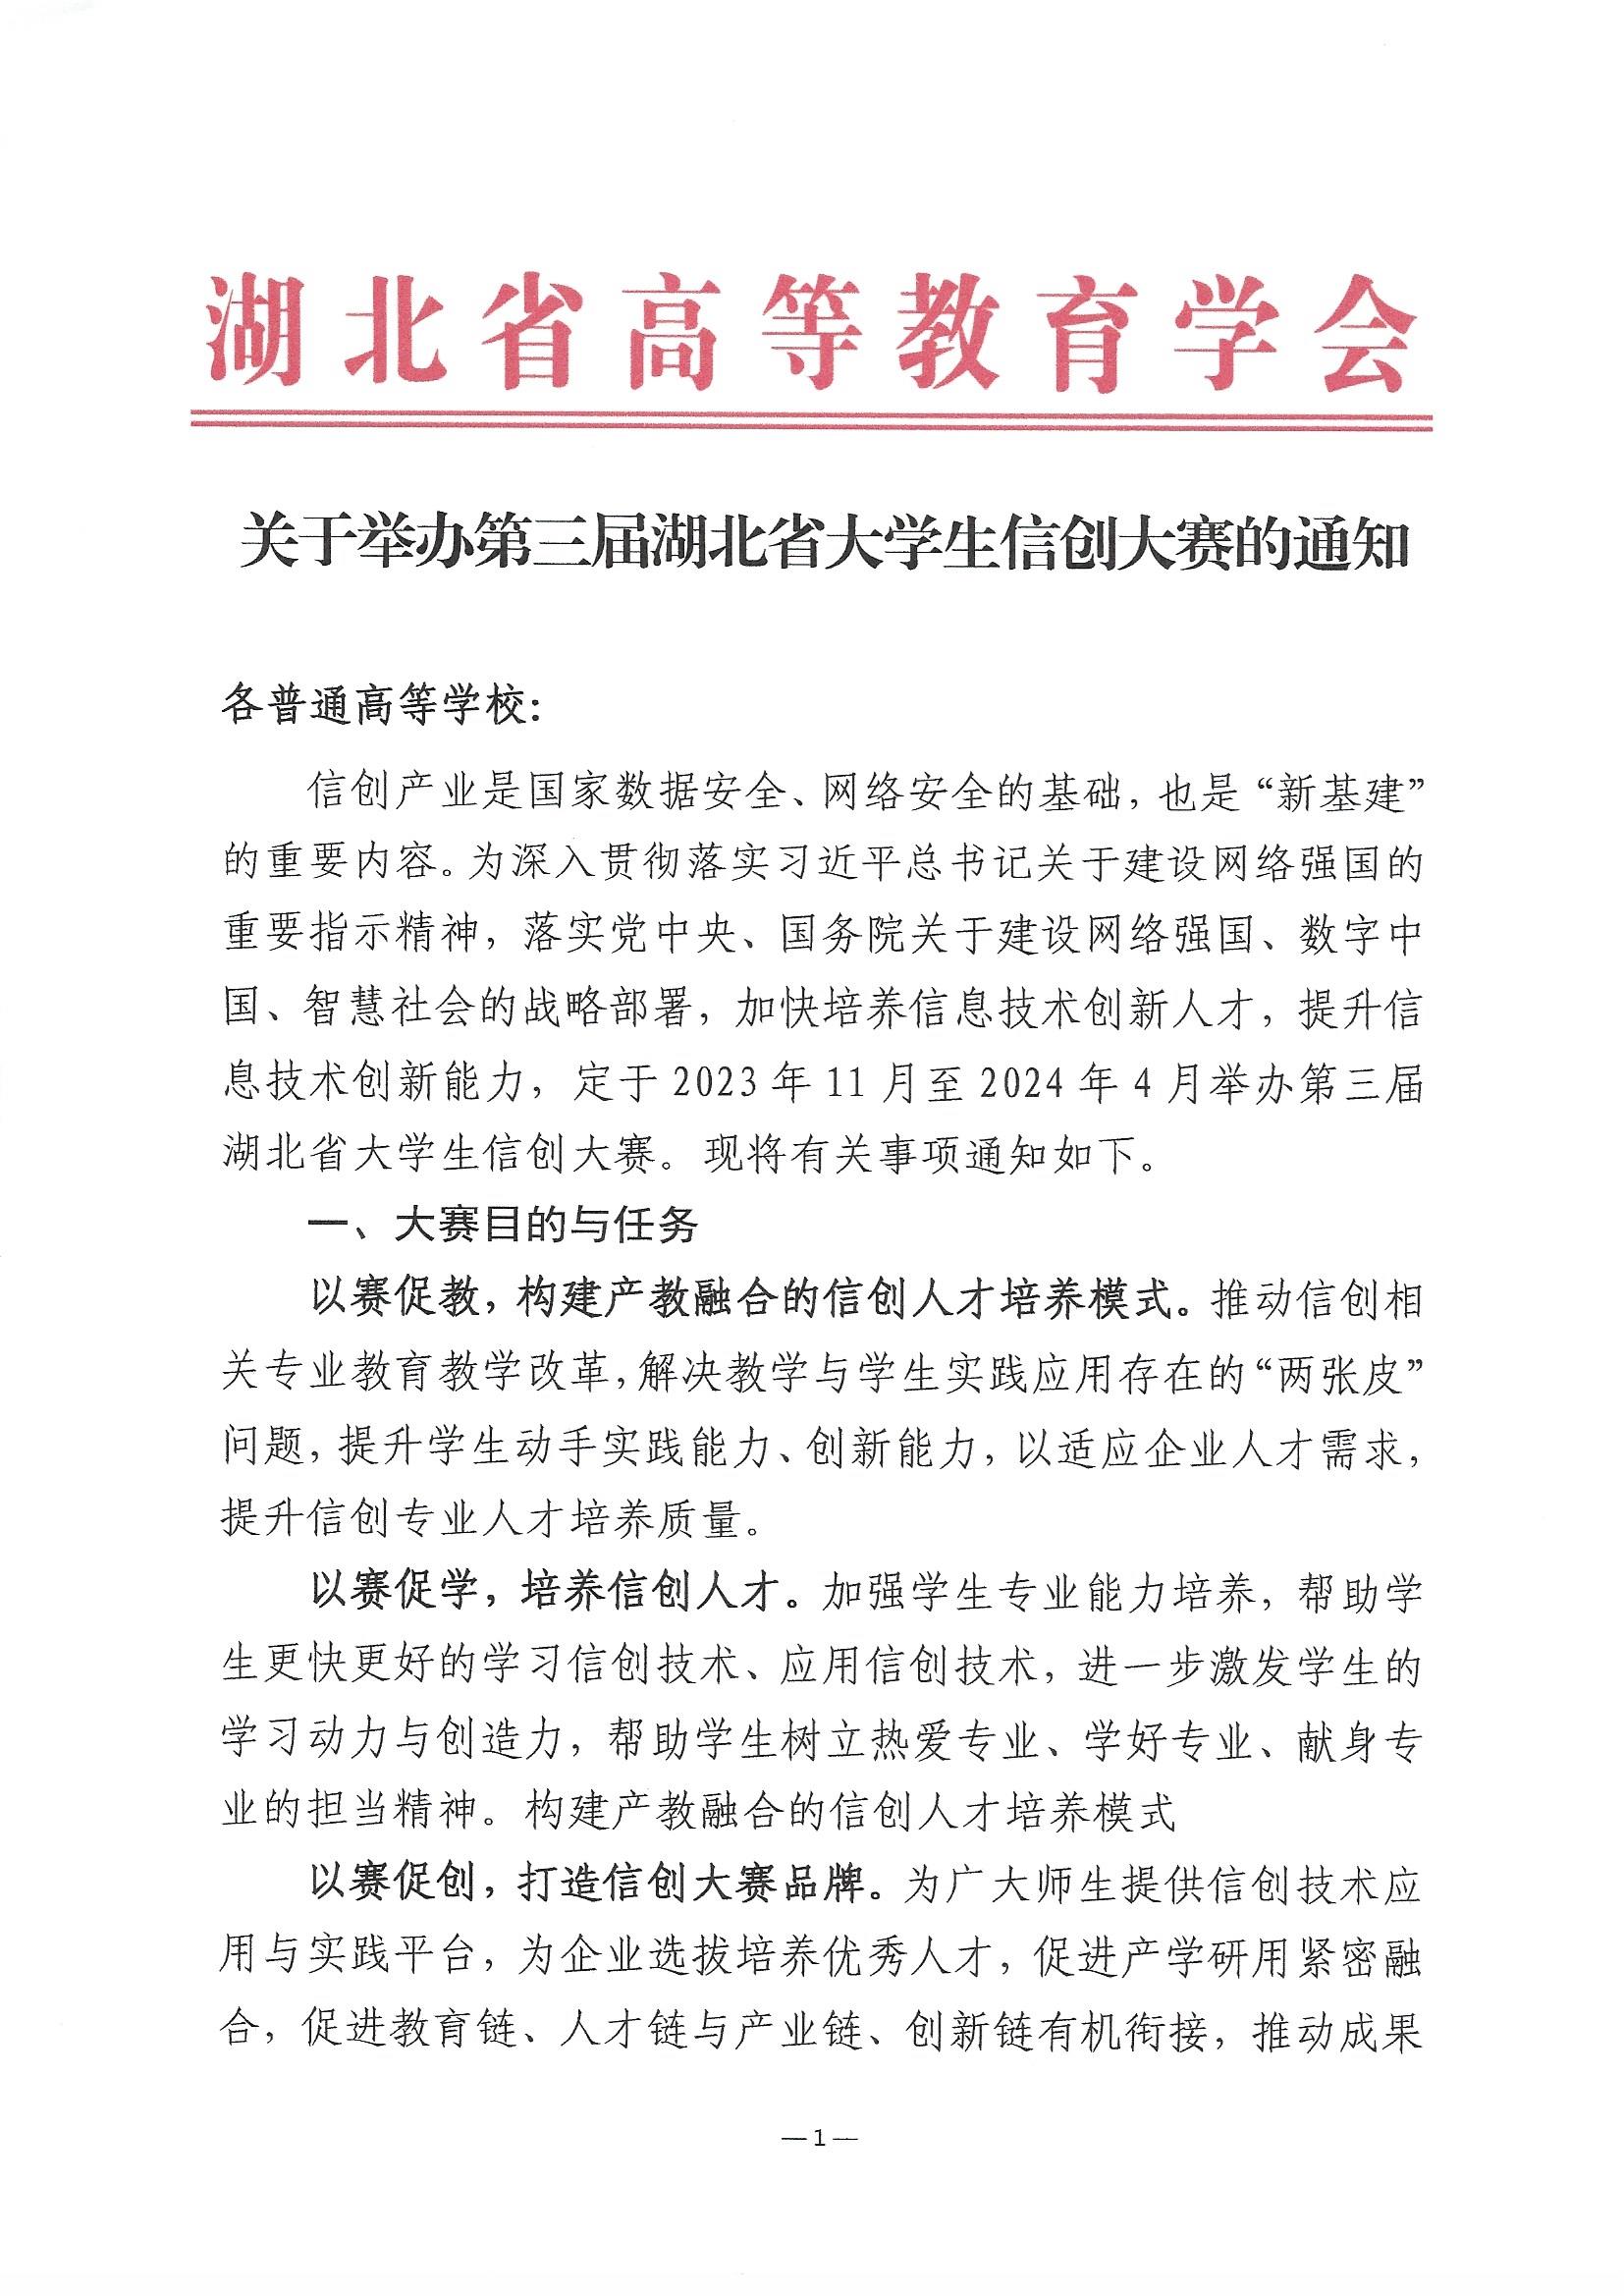 2023.11.9关于举办第三届湖北省大学生信创大赛的通知(1)_页面_1.jpg